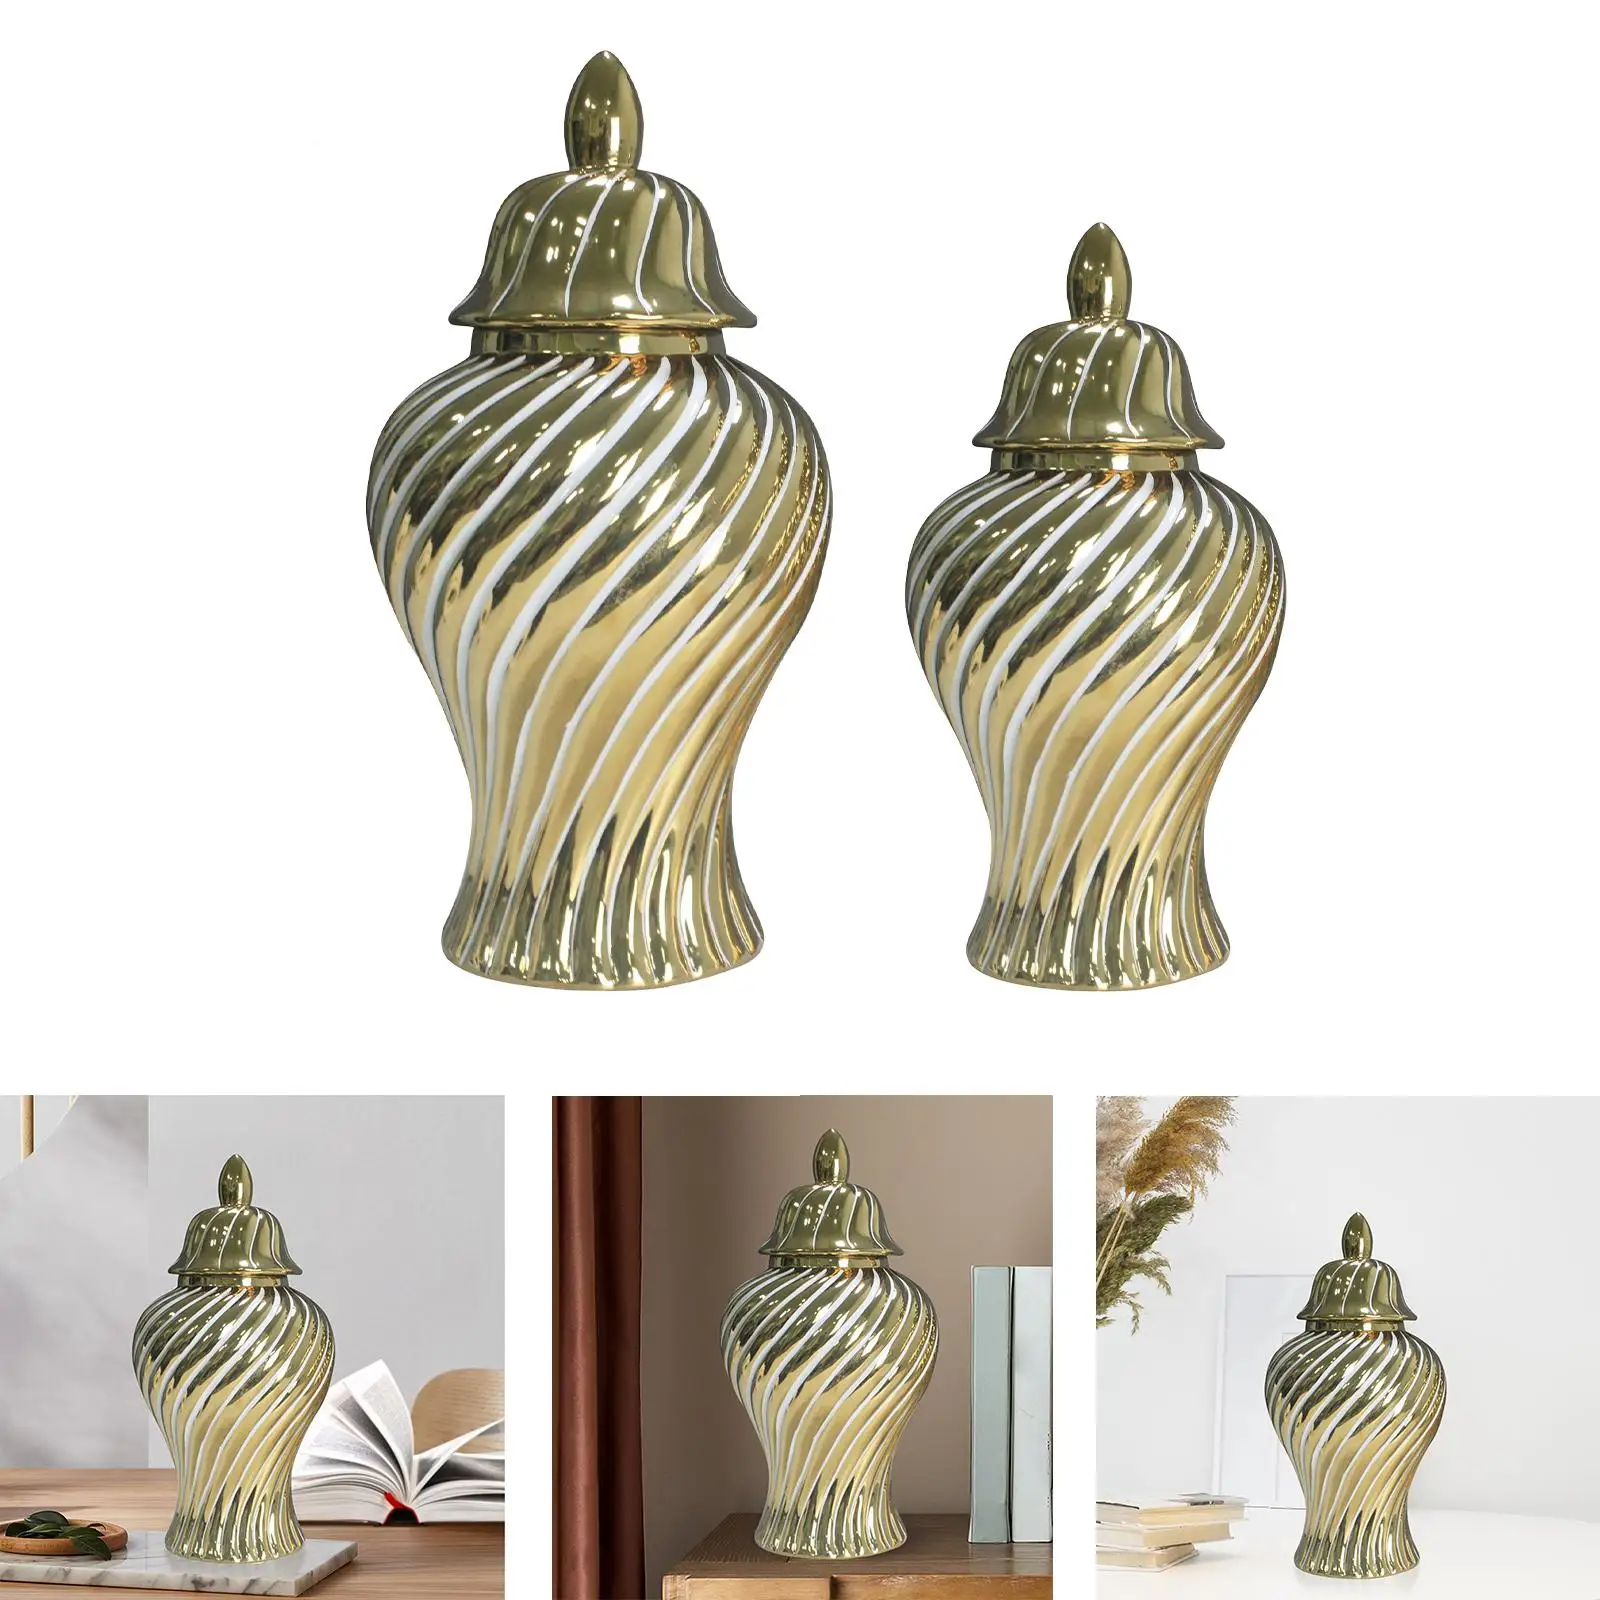 Gold of Ginger Jars Home Decor Light Luxury Artwork Vase for Flowers for Anniversary Living Room Kitchen Restaurant